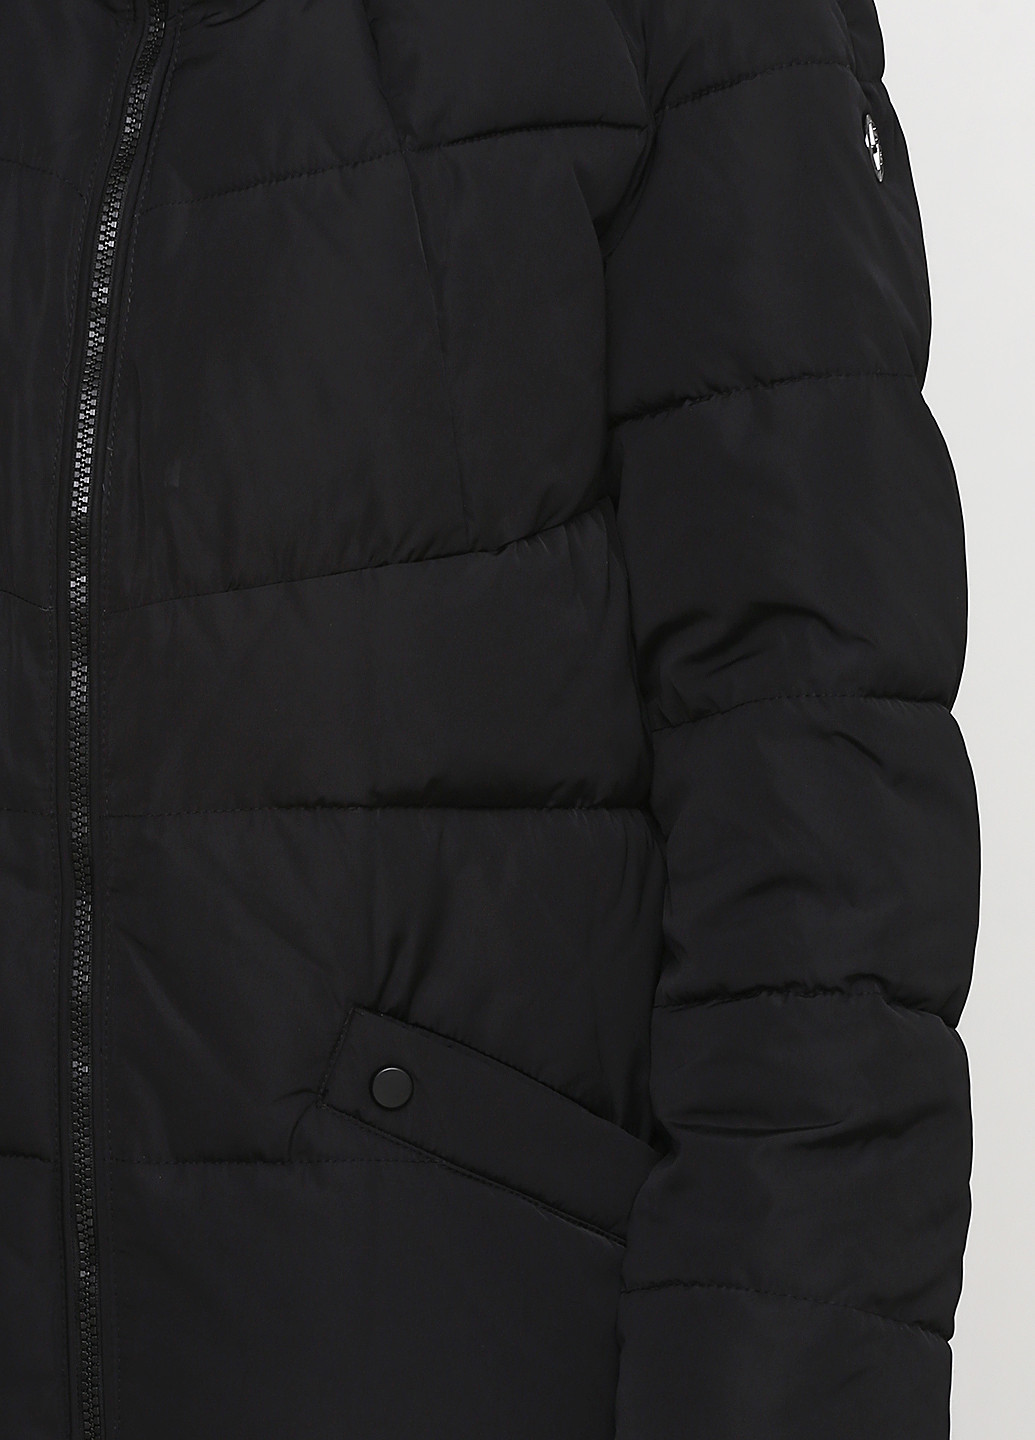 Черная зимняя куртка Finn Flare